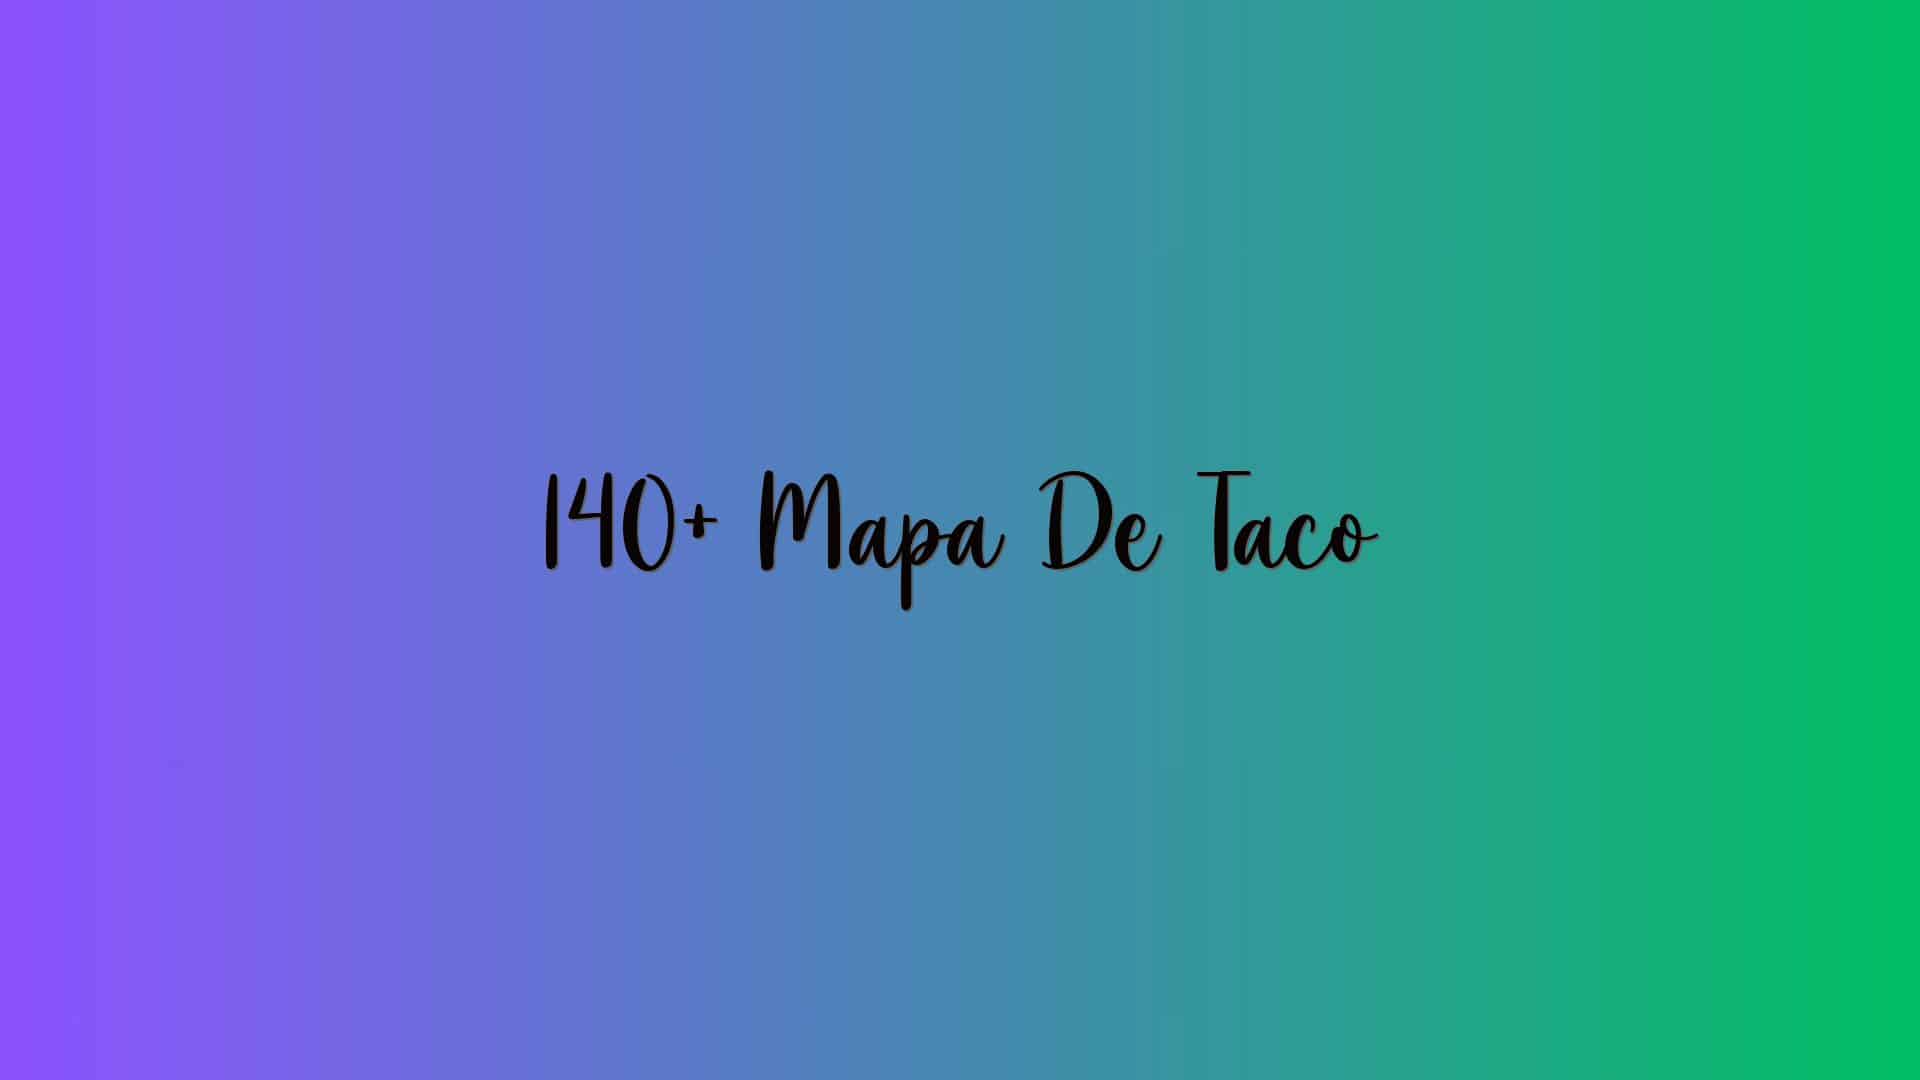 140+ Mapa De Taco